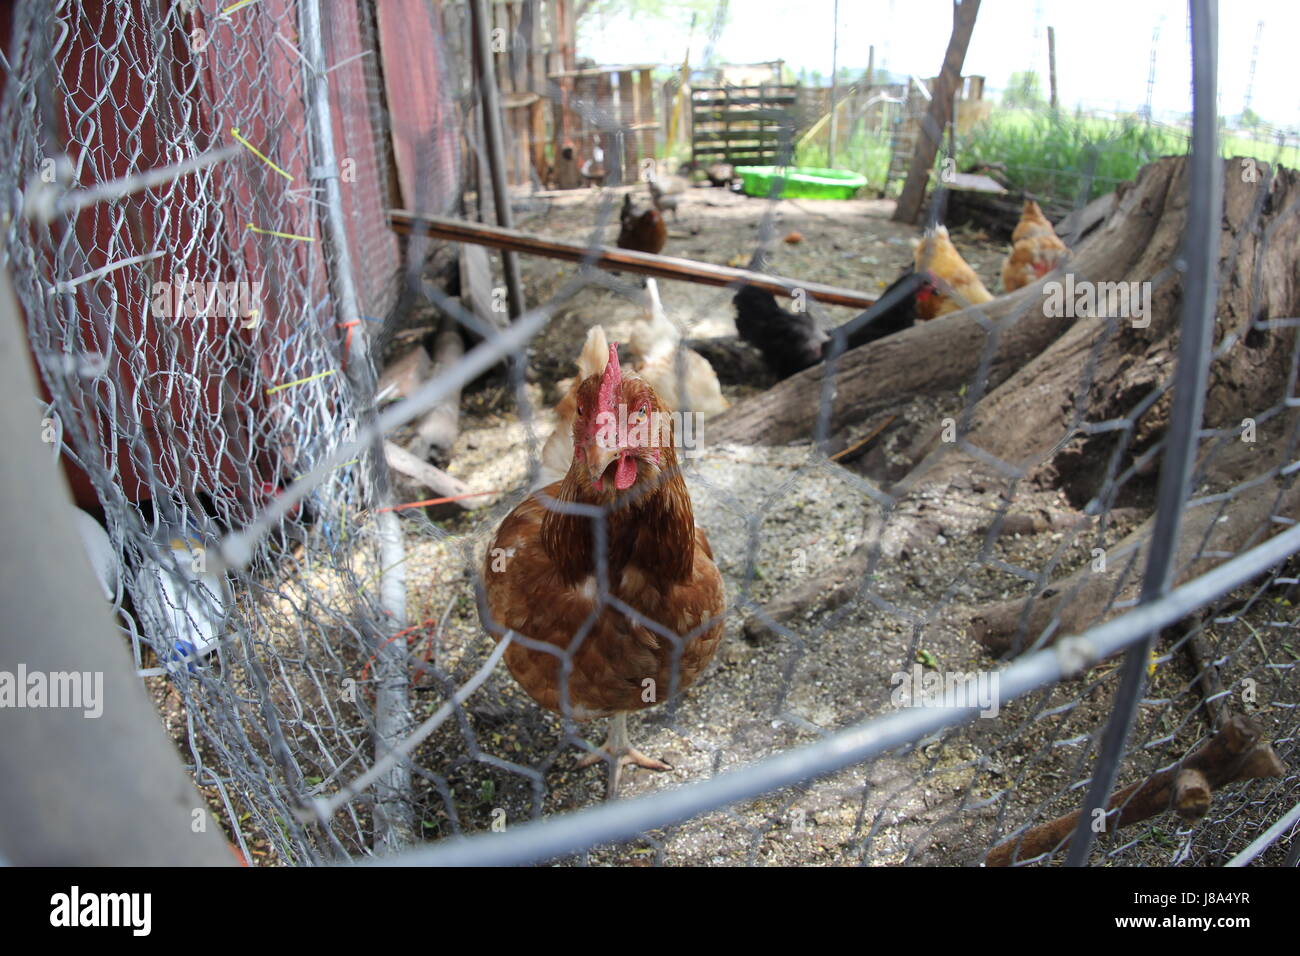 Blick in den Hühnerstall mit einer Henne im Rückblick Stockfoto